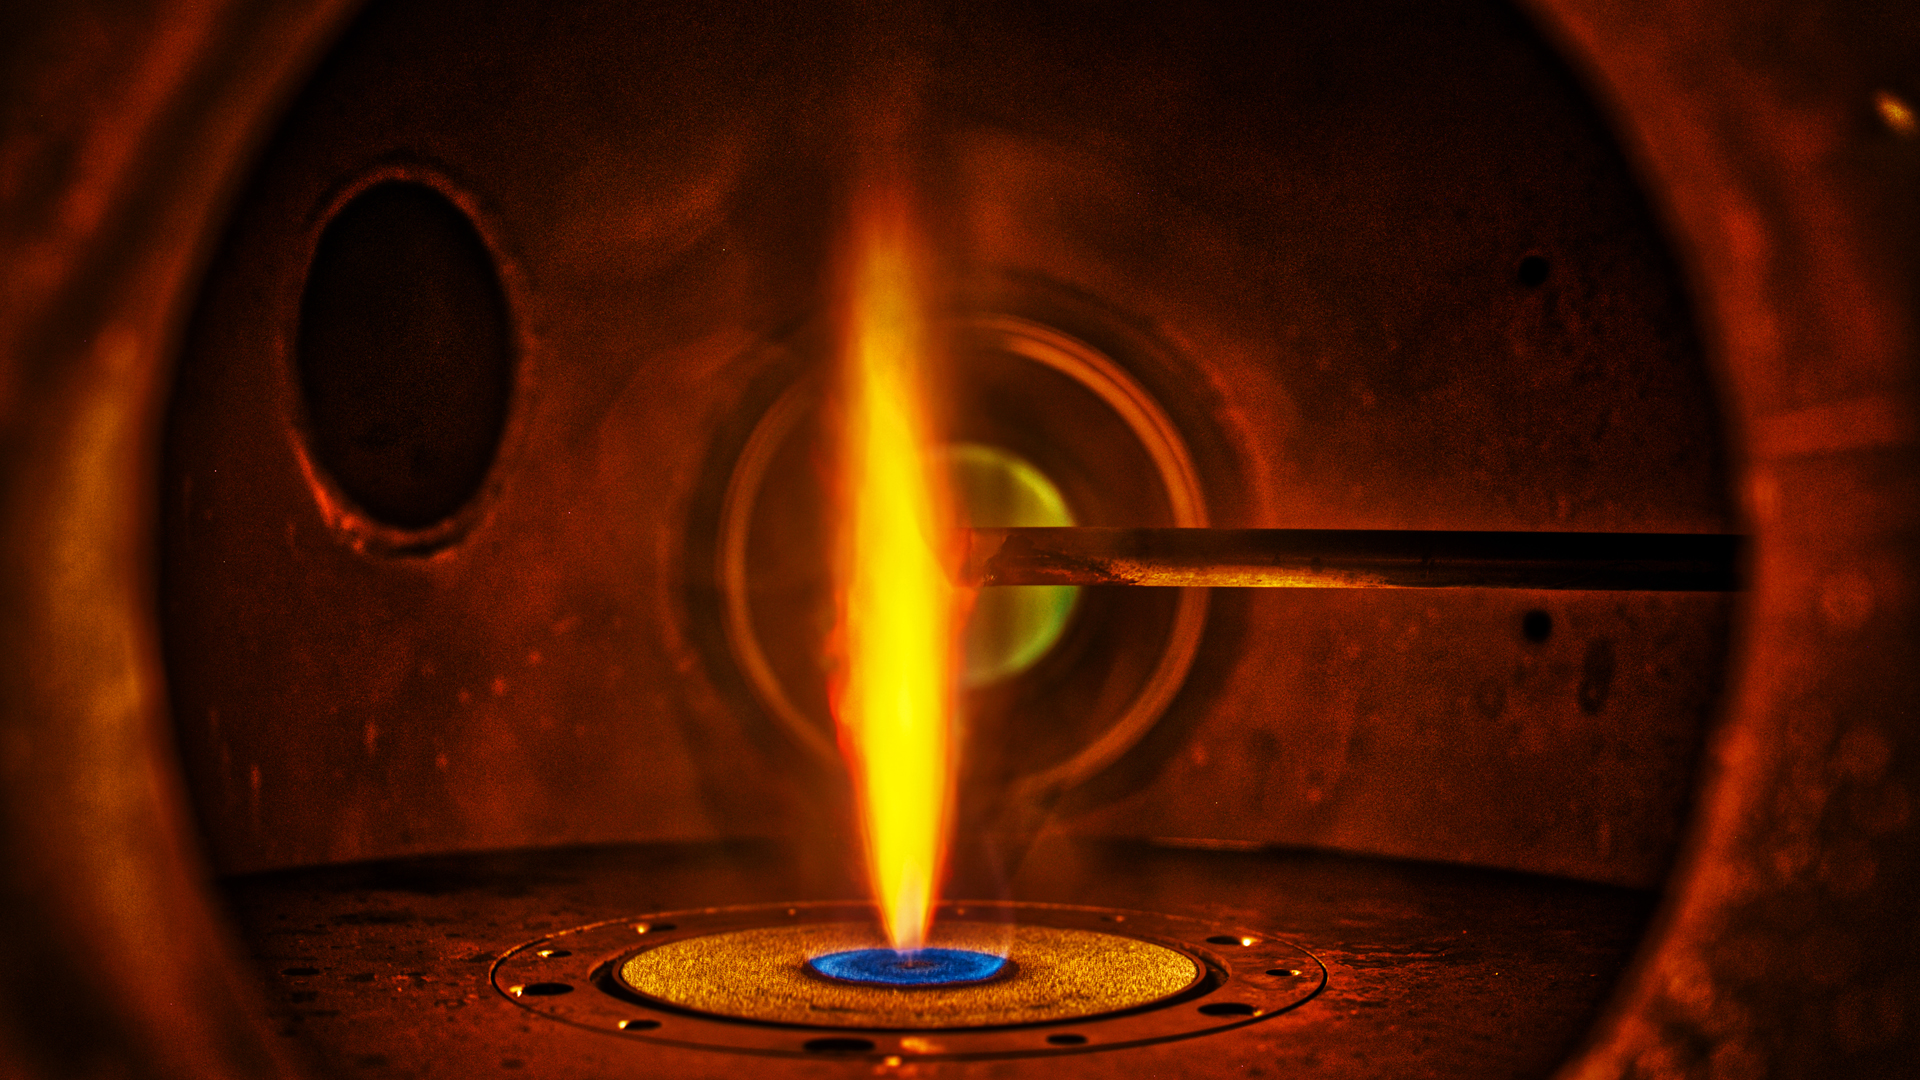 Blick in den Brenner aus Metall: Von unten schießt die Flamme wie aus einem Bunsenbrenner empor. Von rechts schiebt sich ein Sondenstab in die Flamme.